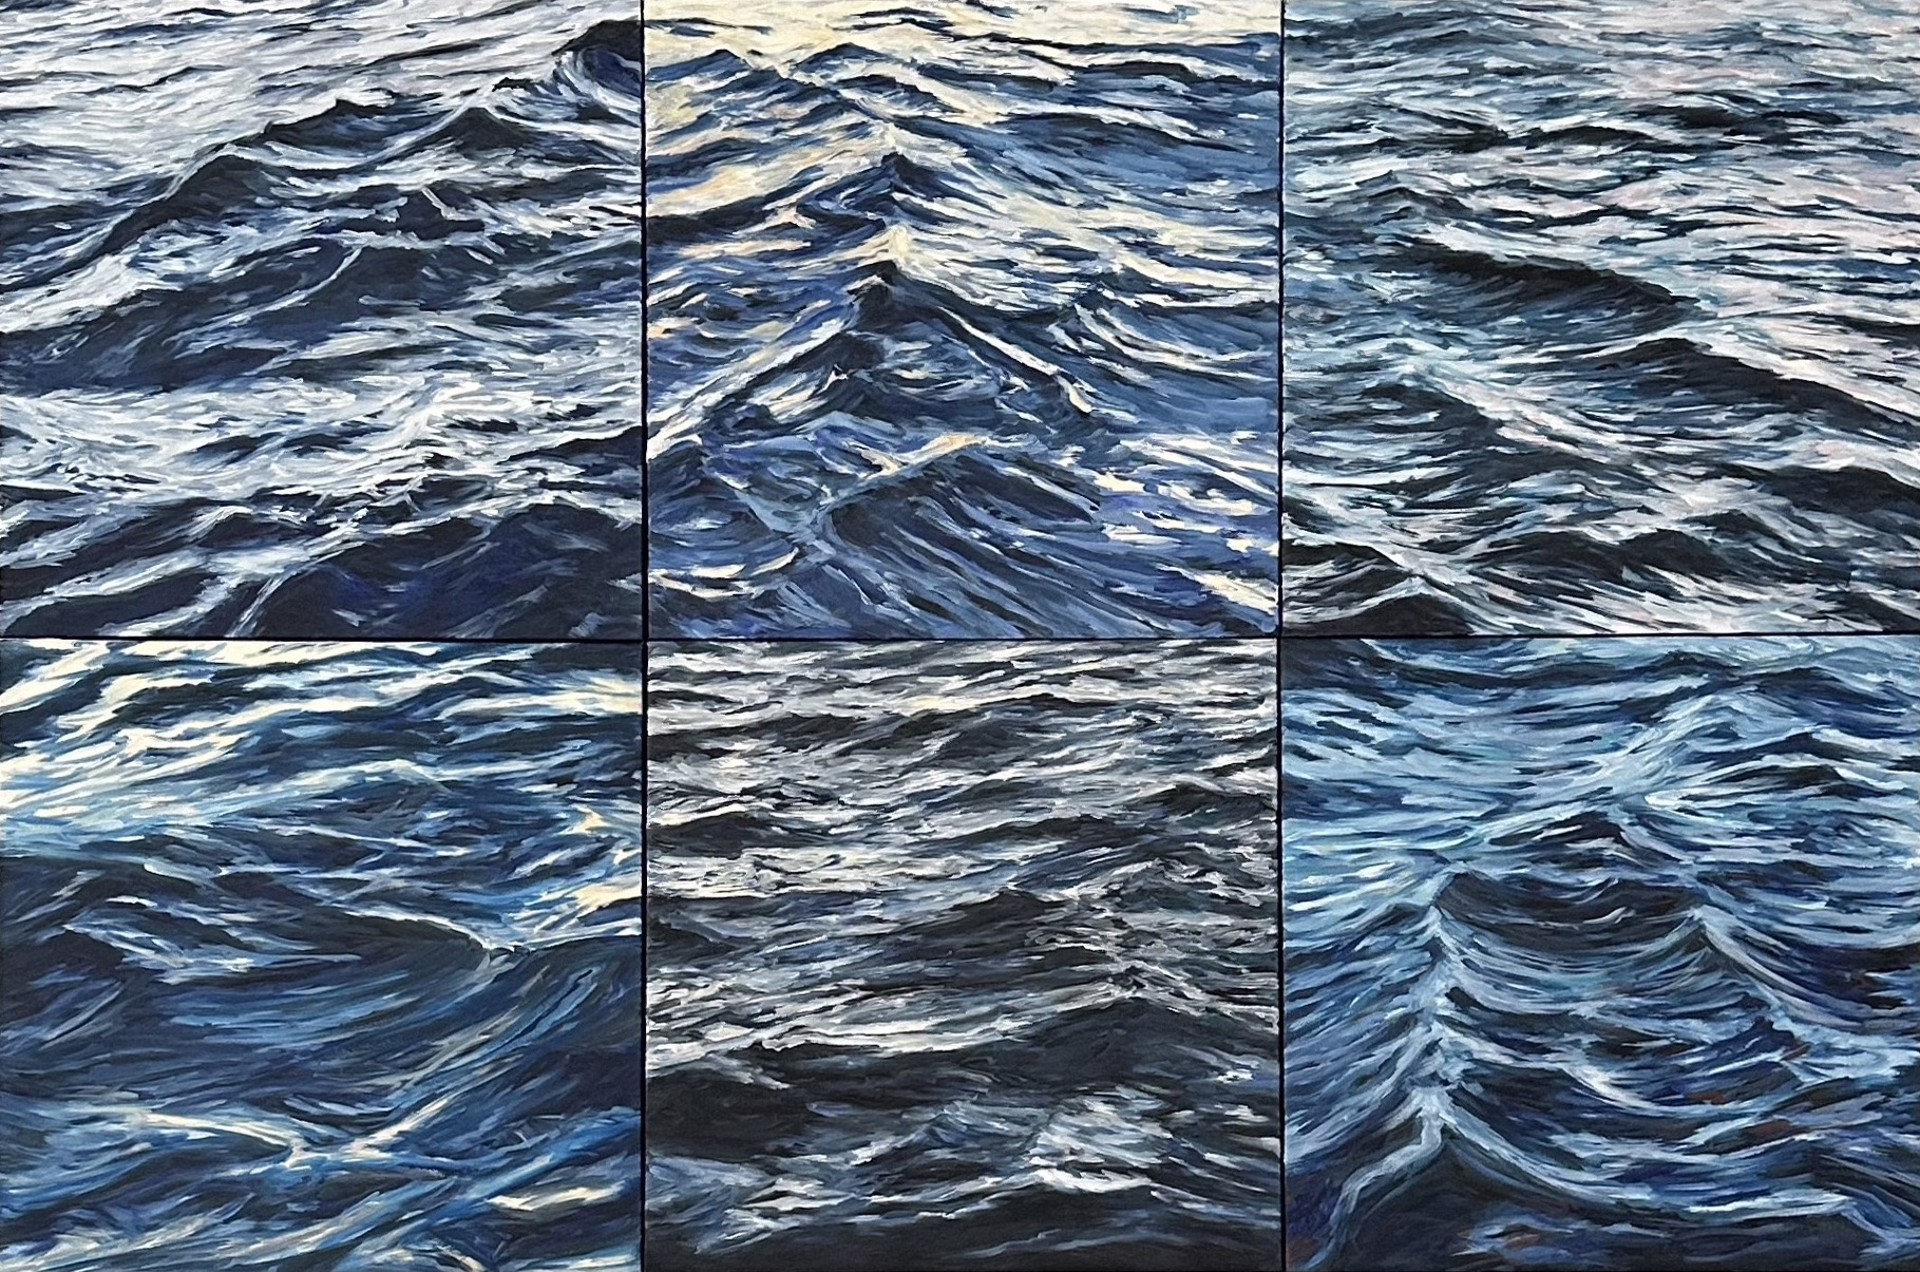 Lahaina Waves 10 by Valerie Eickmeier